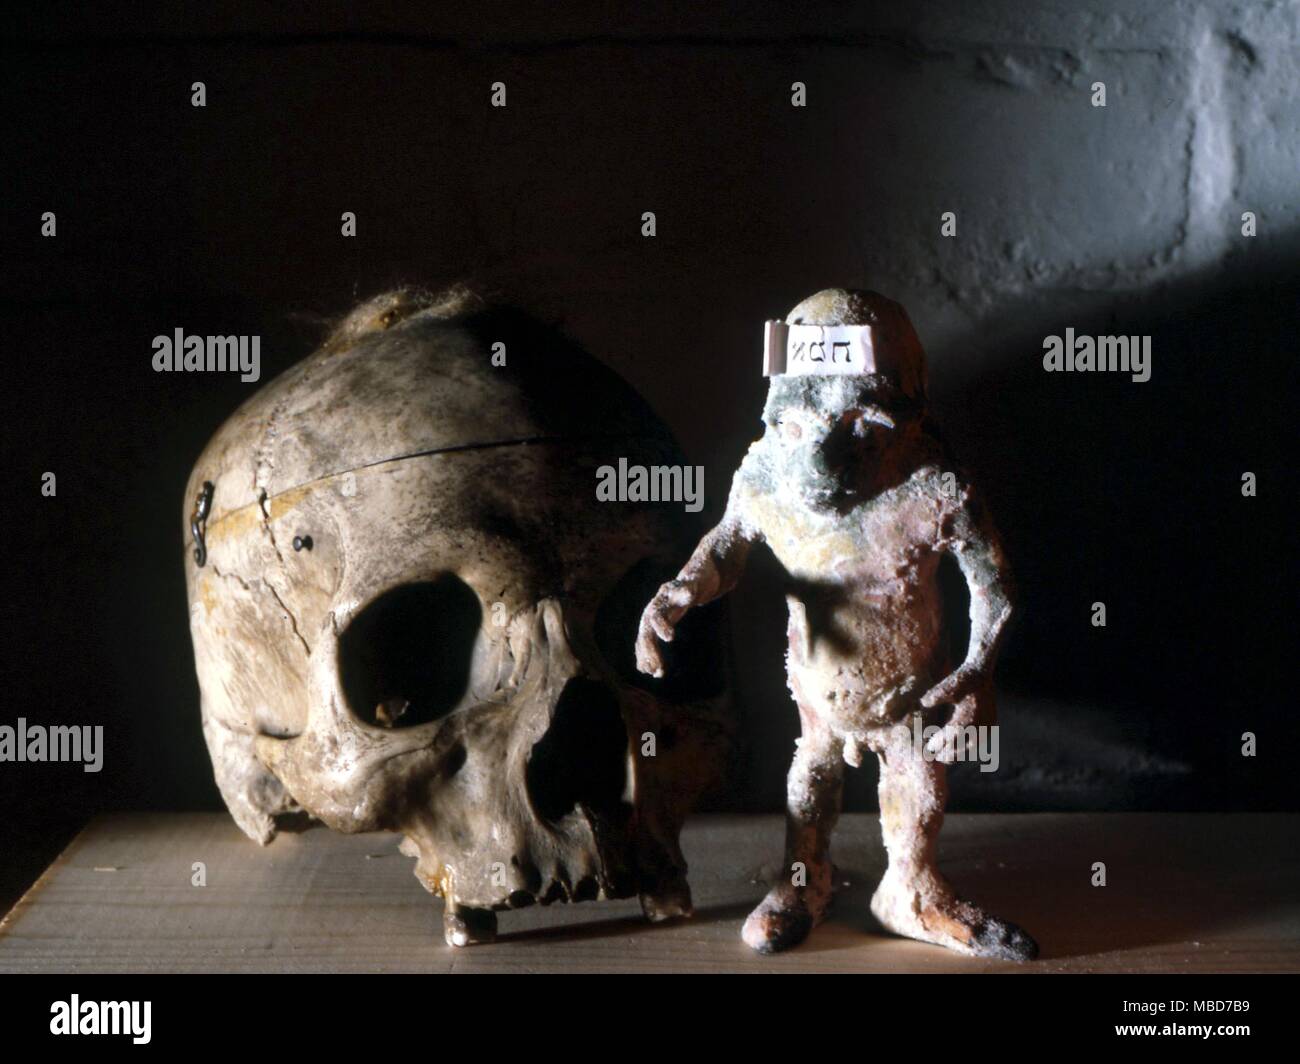 Crâne avec le monstre appelé fabriqué le Golem, une sorte de prototype de la créature de Frankenstein. Banque D'Images